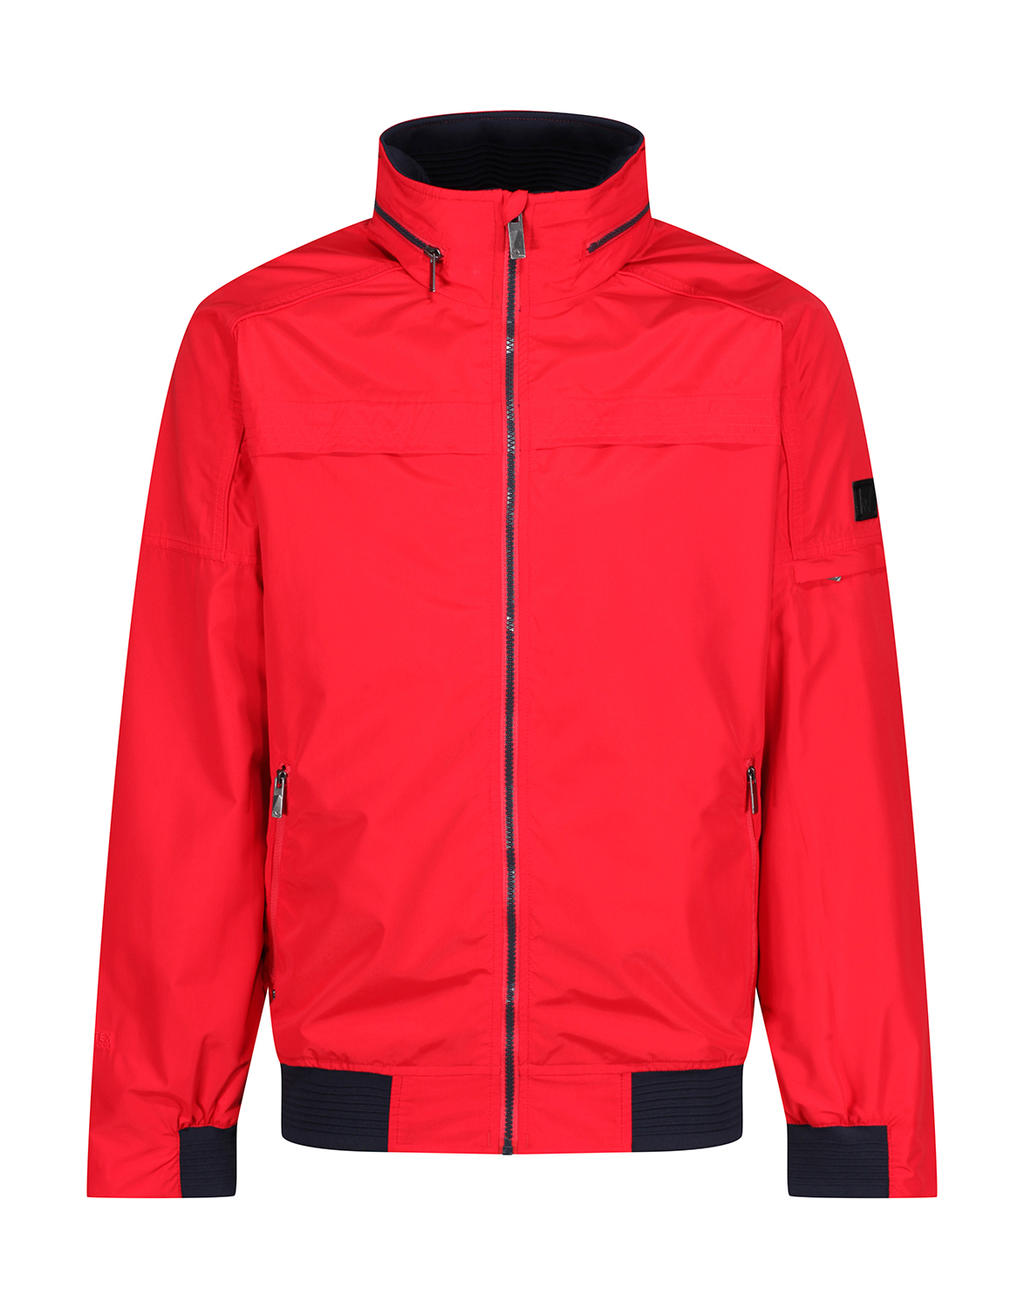  Finn Waterproof Shell Jacket in Farbe True Red